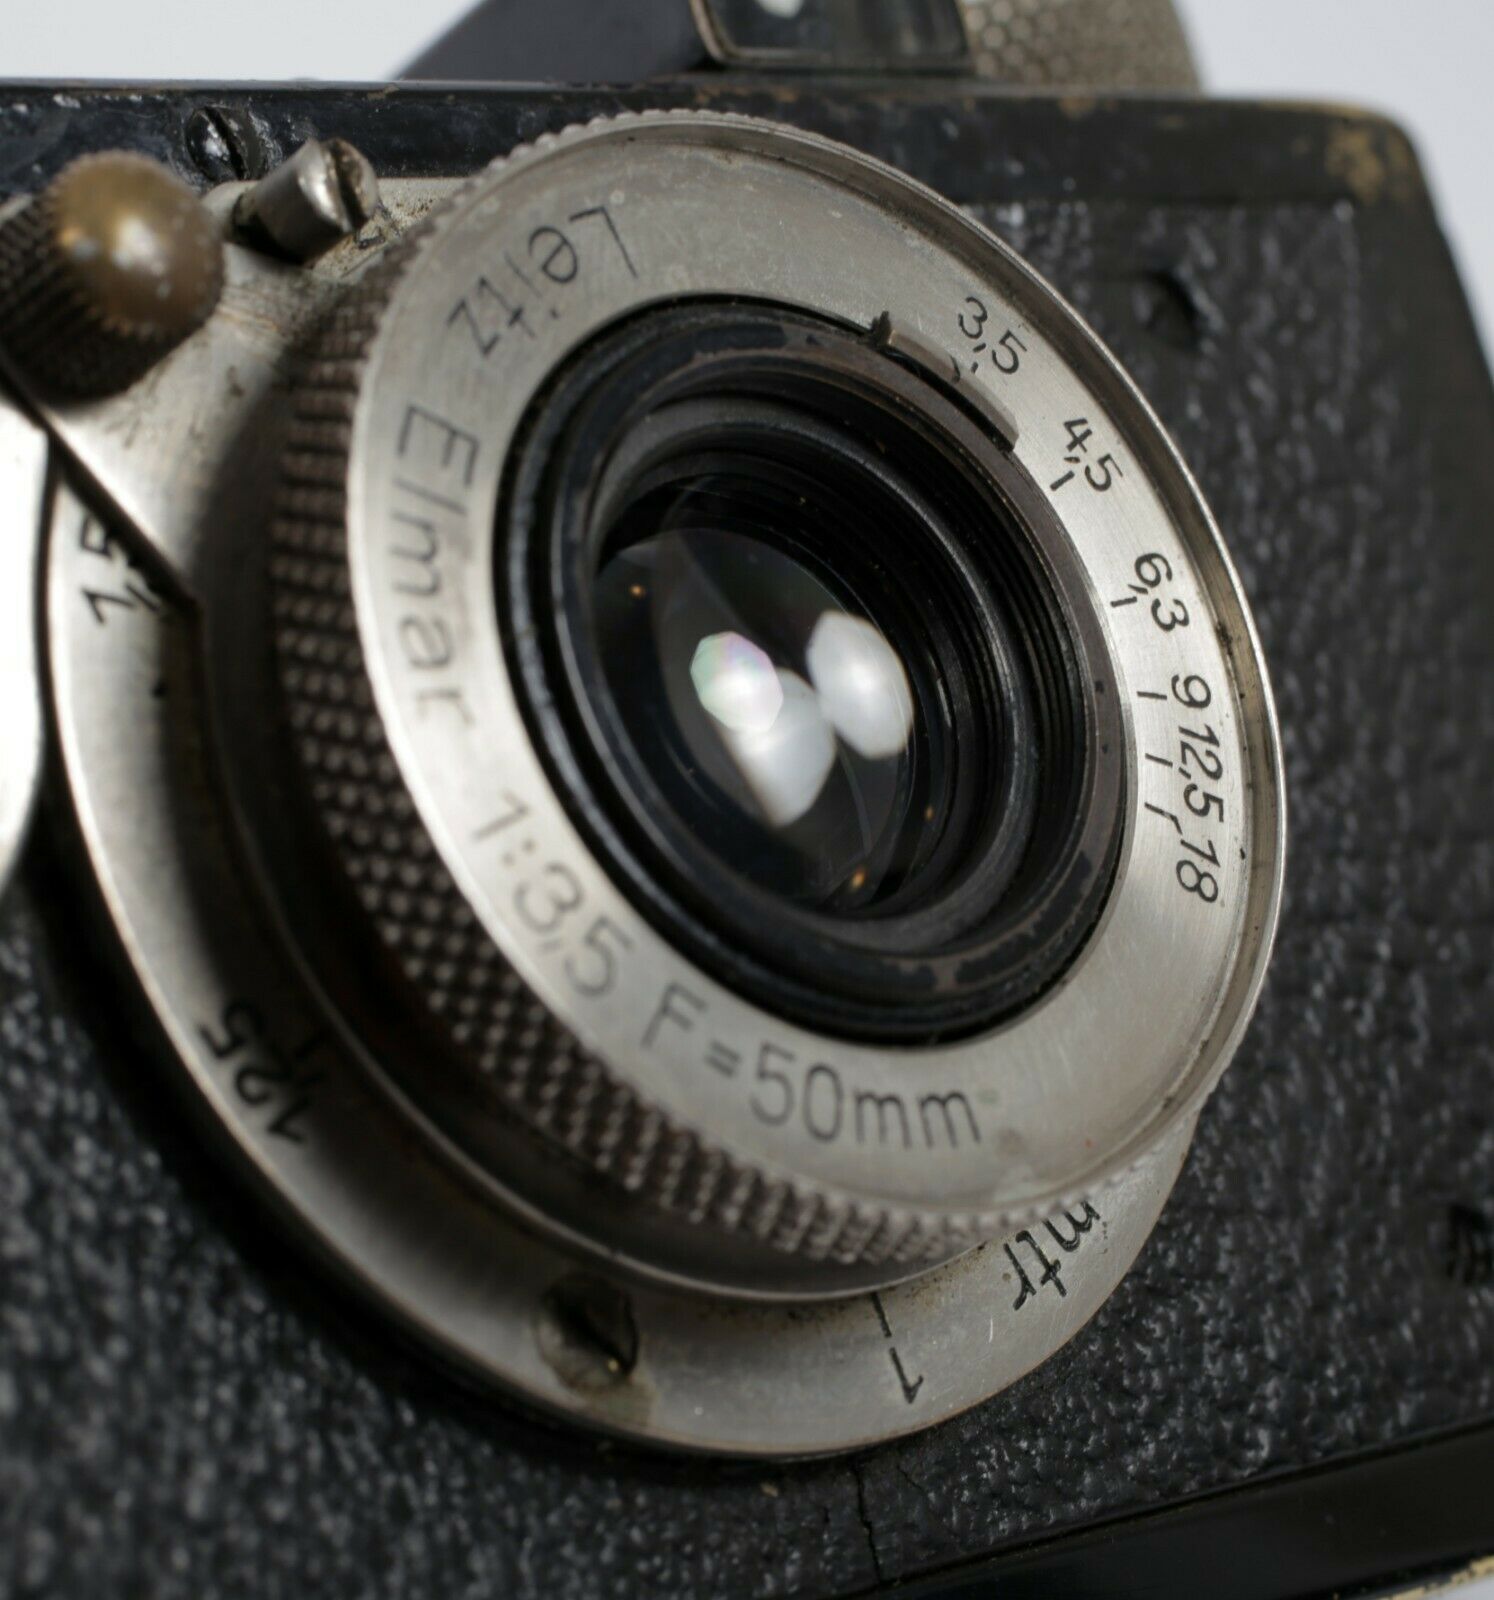 Leica IA 35mm Film Camera leitz rangefinder Elmar 50mm F3.5 lens 